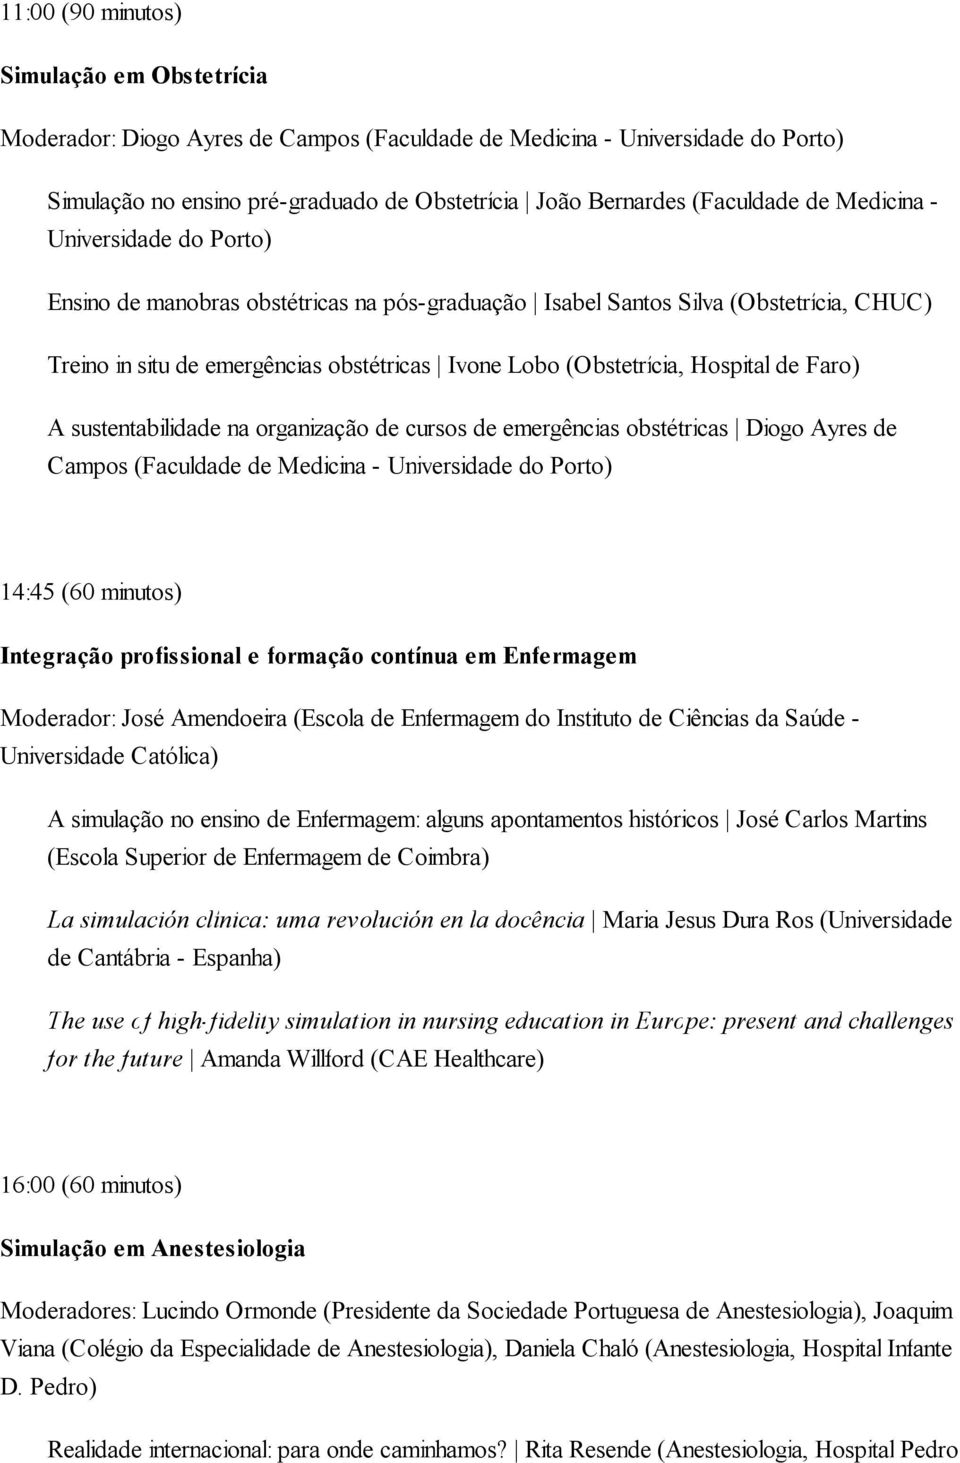 Hospital de Faro) A sustentabilidade na organização de cursos de emergências obstétricas Diogo Ayres de Campos (Faculdade de Medicina - Universidade do Porto) 14:45 (60 minutos) Integração